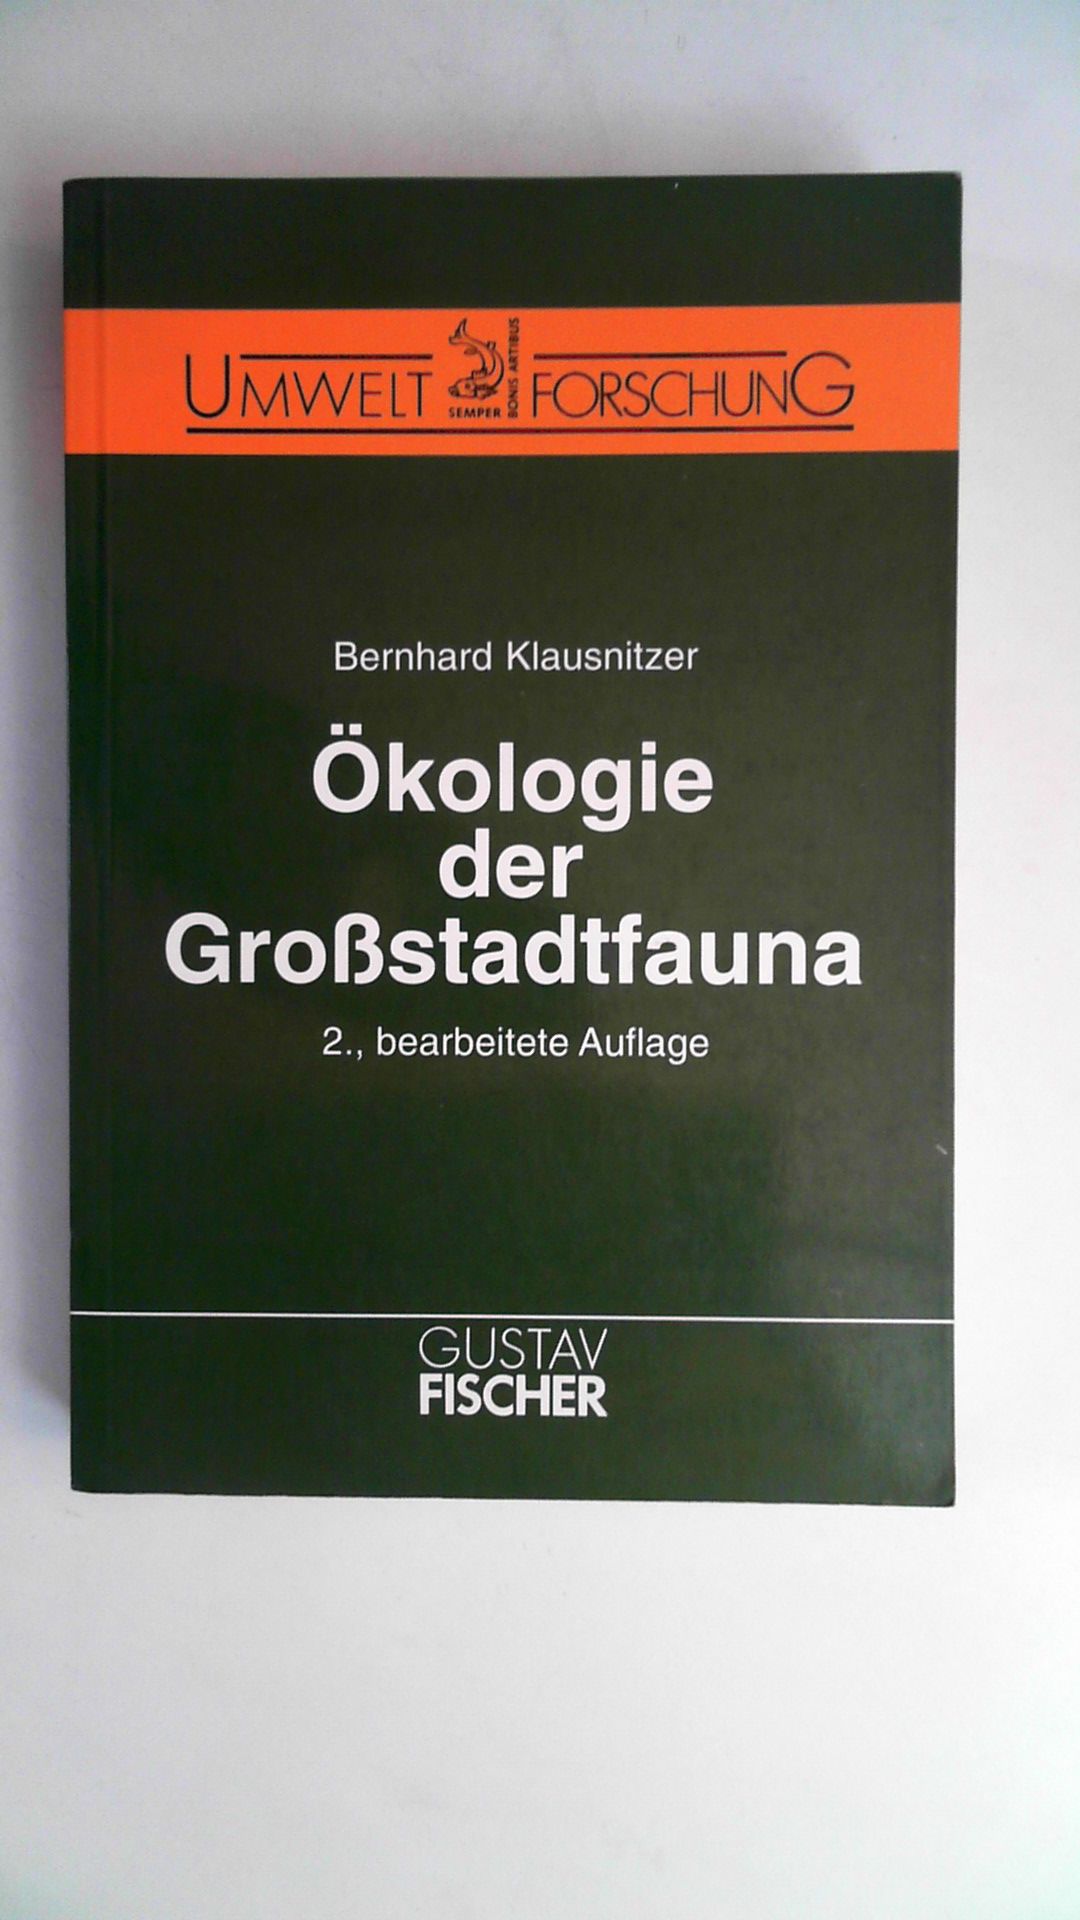 Ökologie der Grossstadtfauna, - Klausnitzer, Bernhard